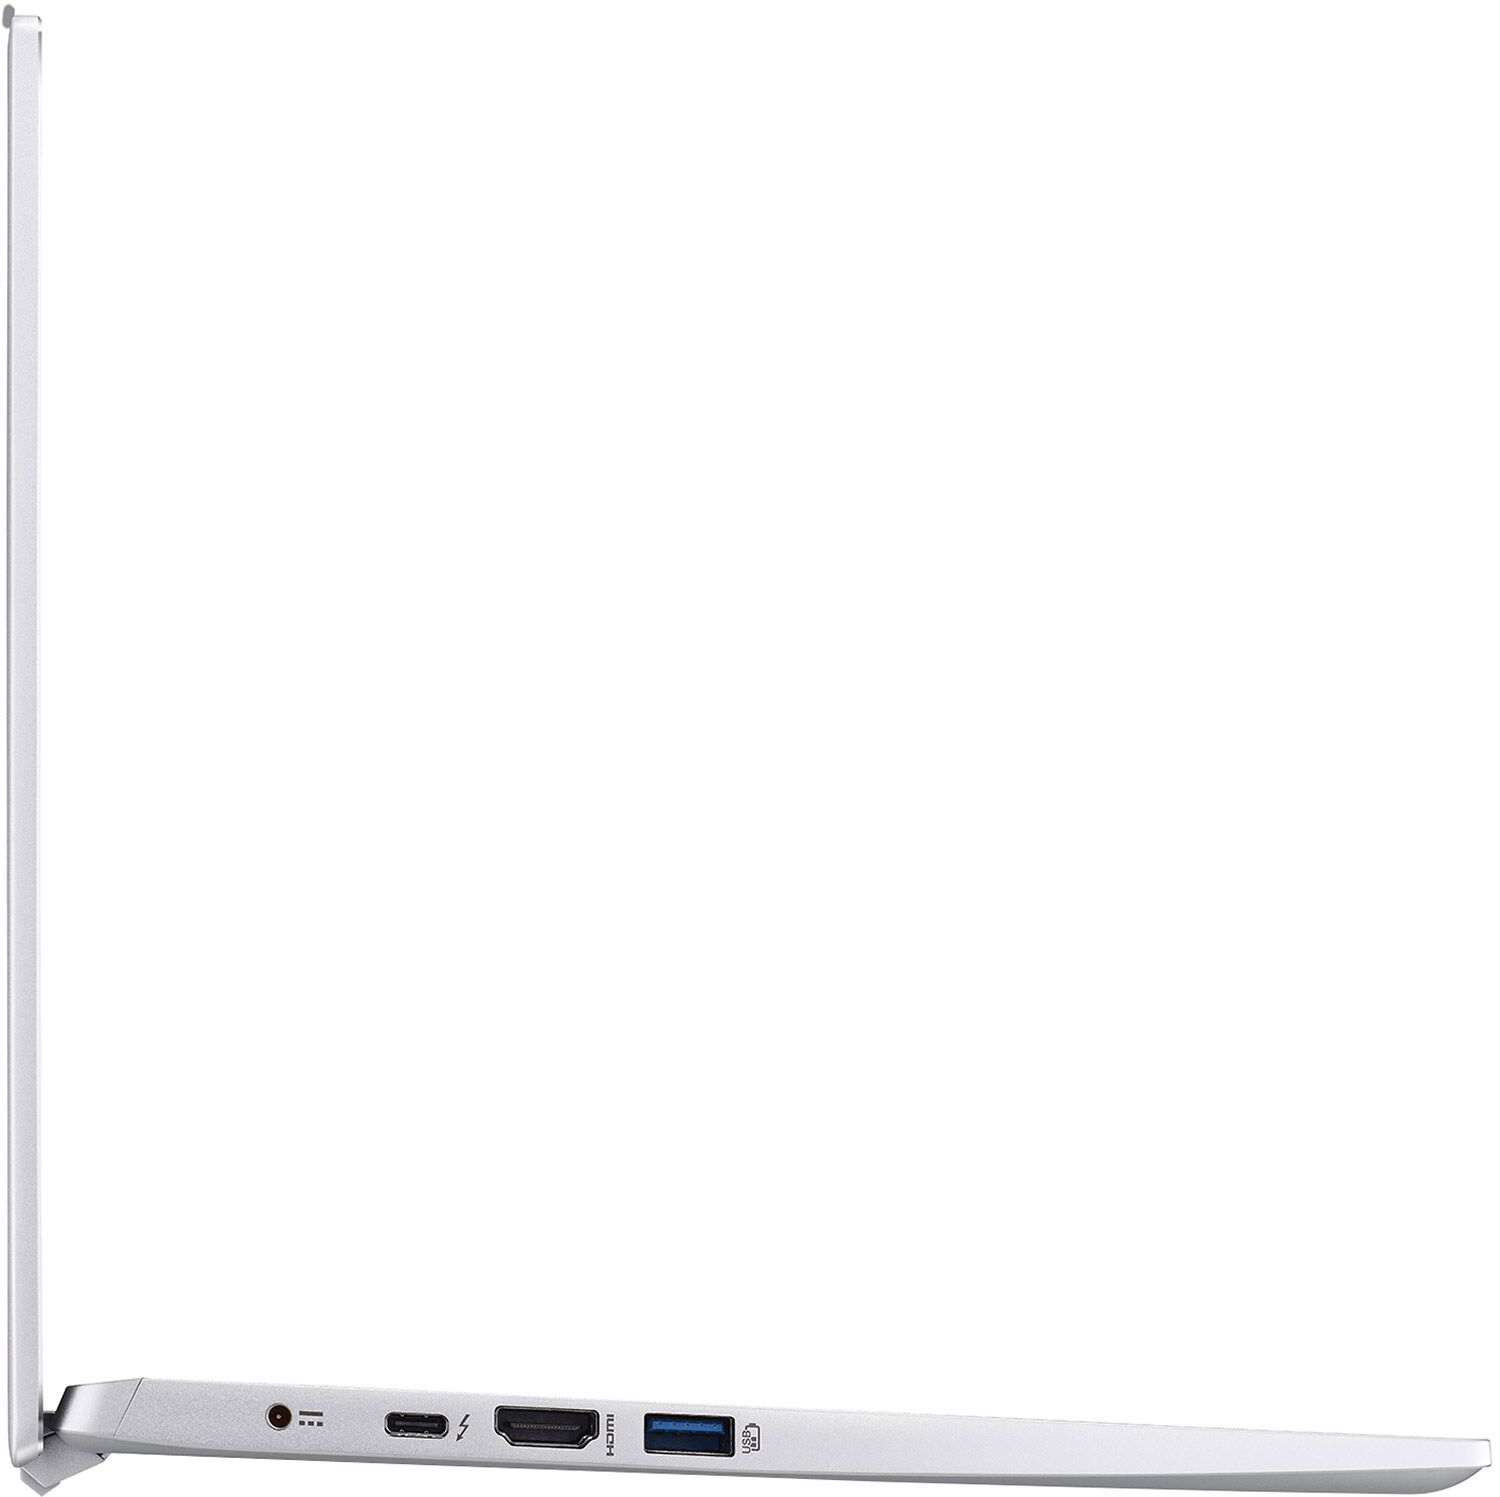 NXABNEK00A Acer Laptop 04